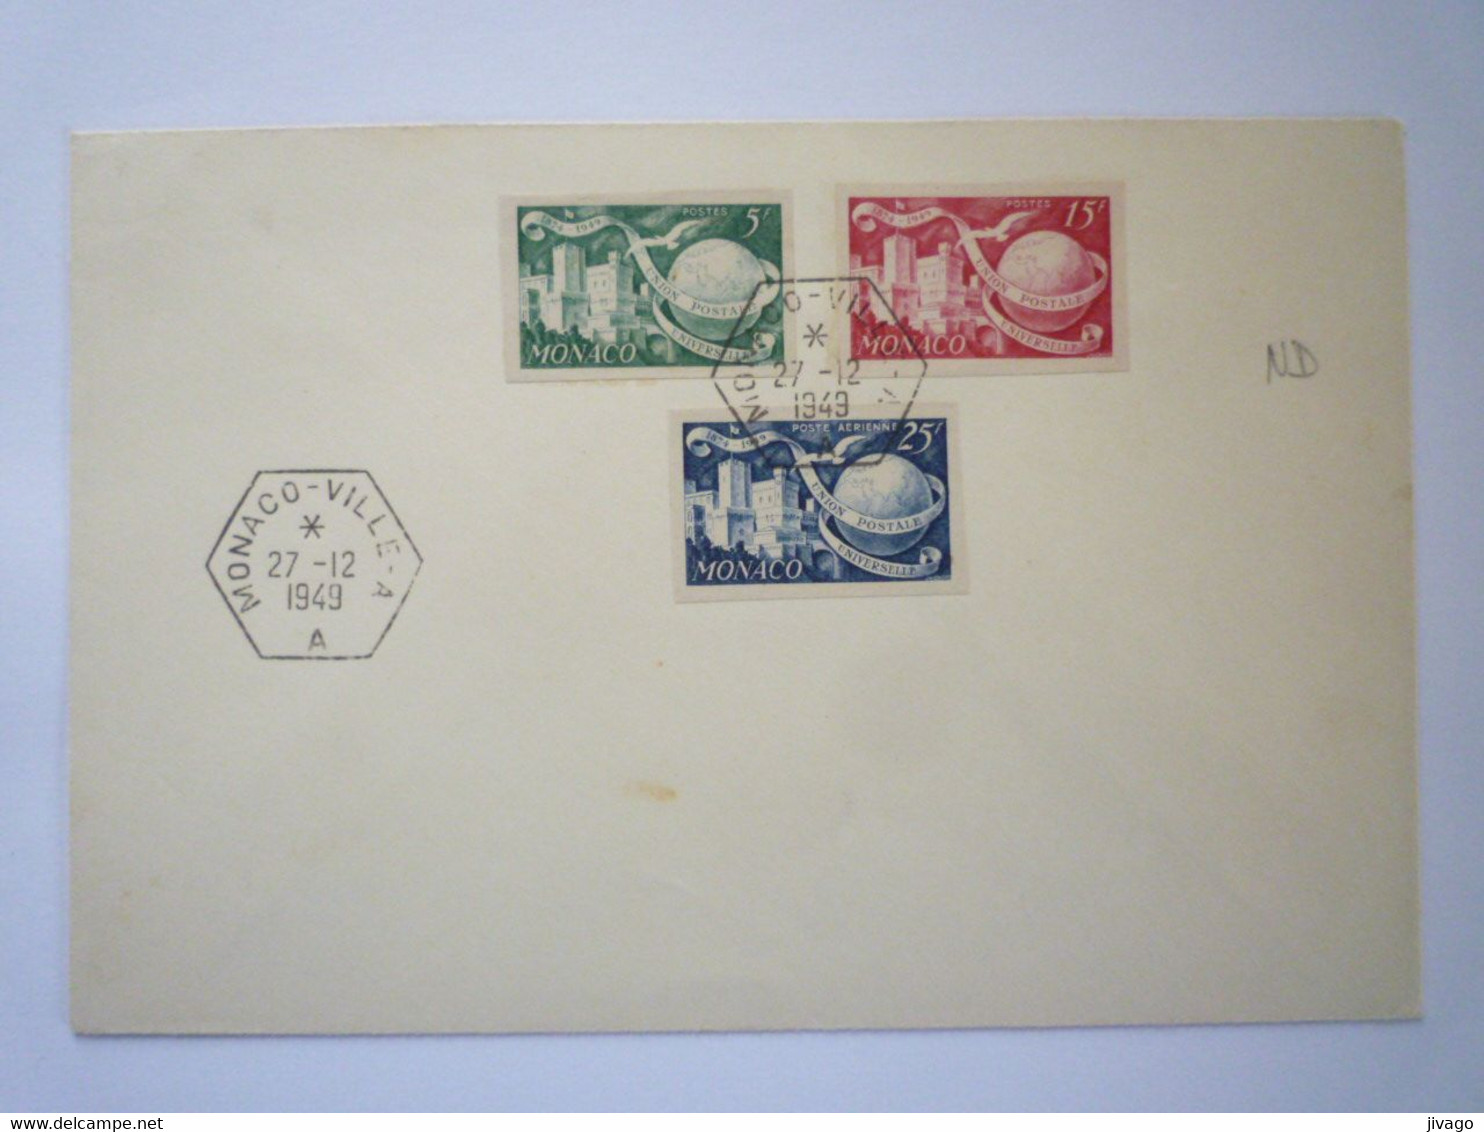 22 - M 4162  Enveloppe Au Départ De MONACO - VILLE - A   (Timbres Non Dentelés)  1949   XXX - Lettres & Documents